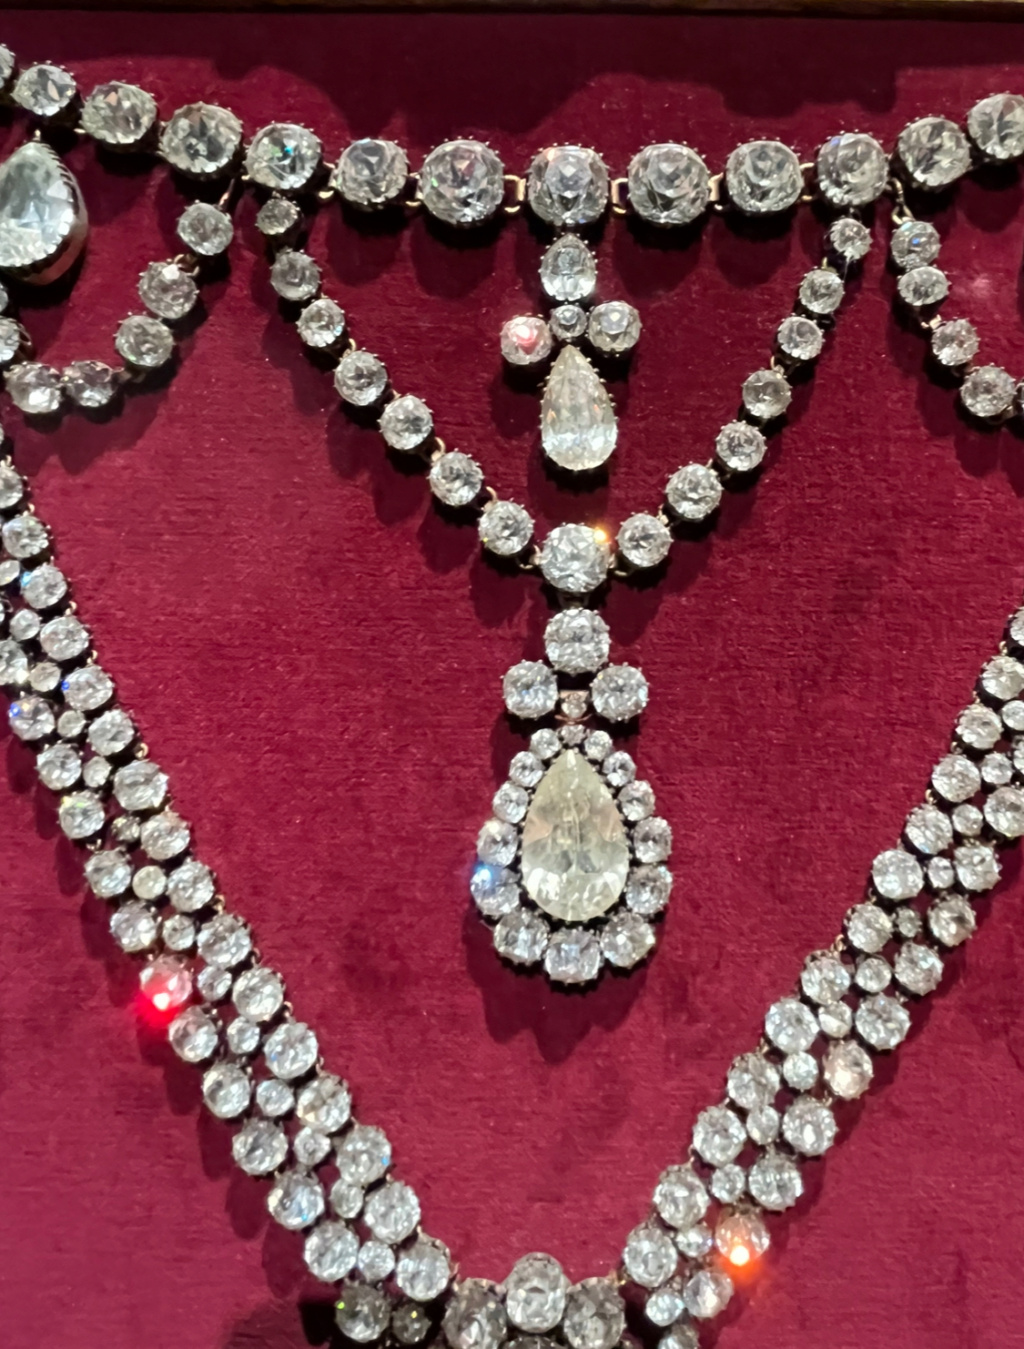 Le collier dit de la reine Marie-Antoinette (L'affaire du collier de la reine), et ses répliques - Page 2 Img_5413